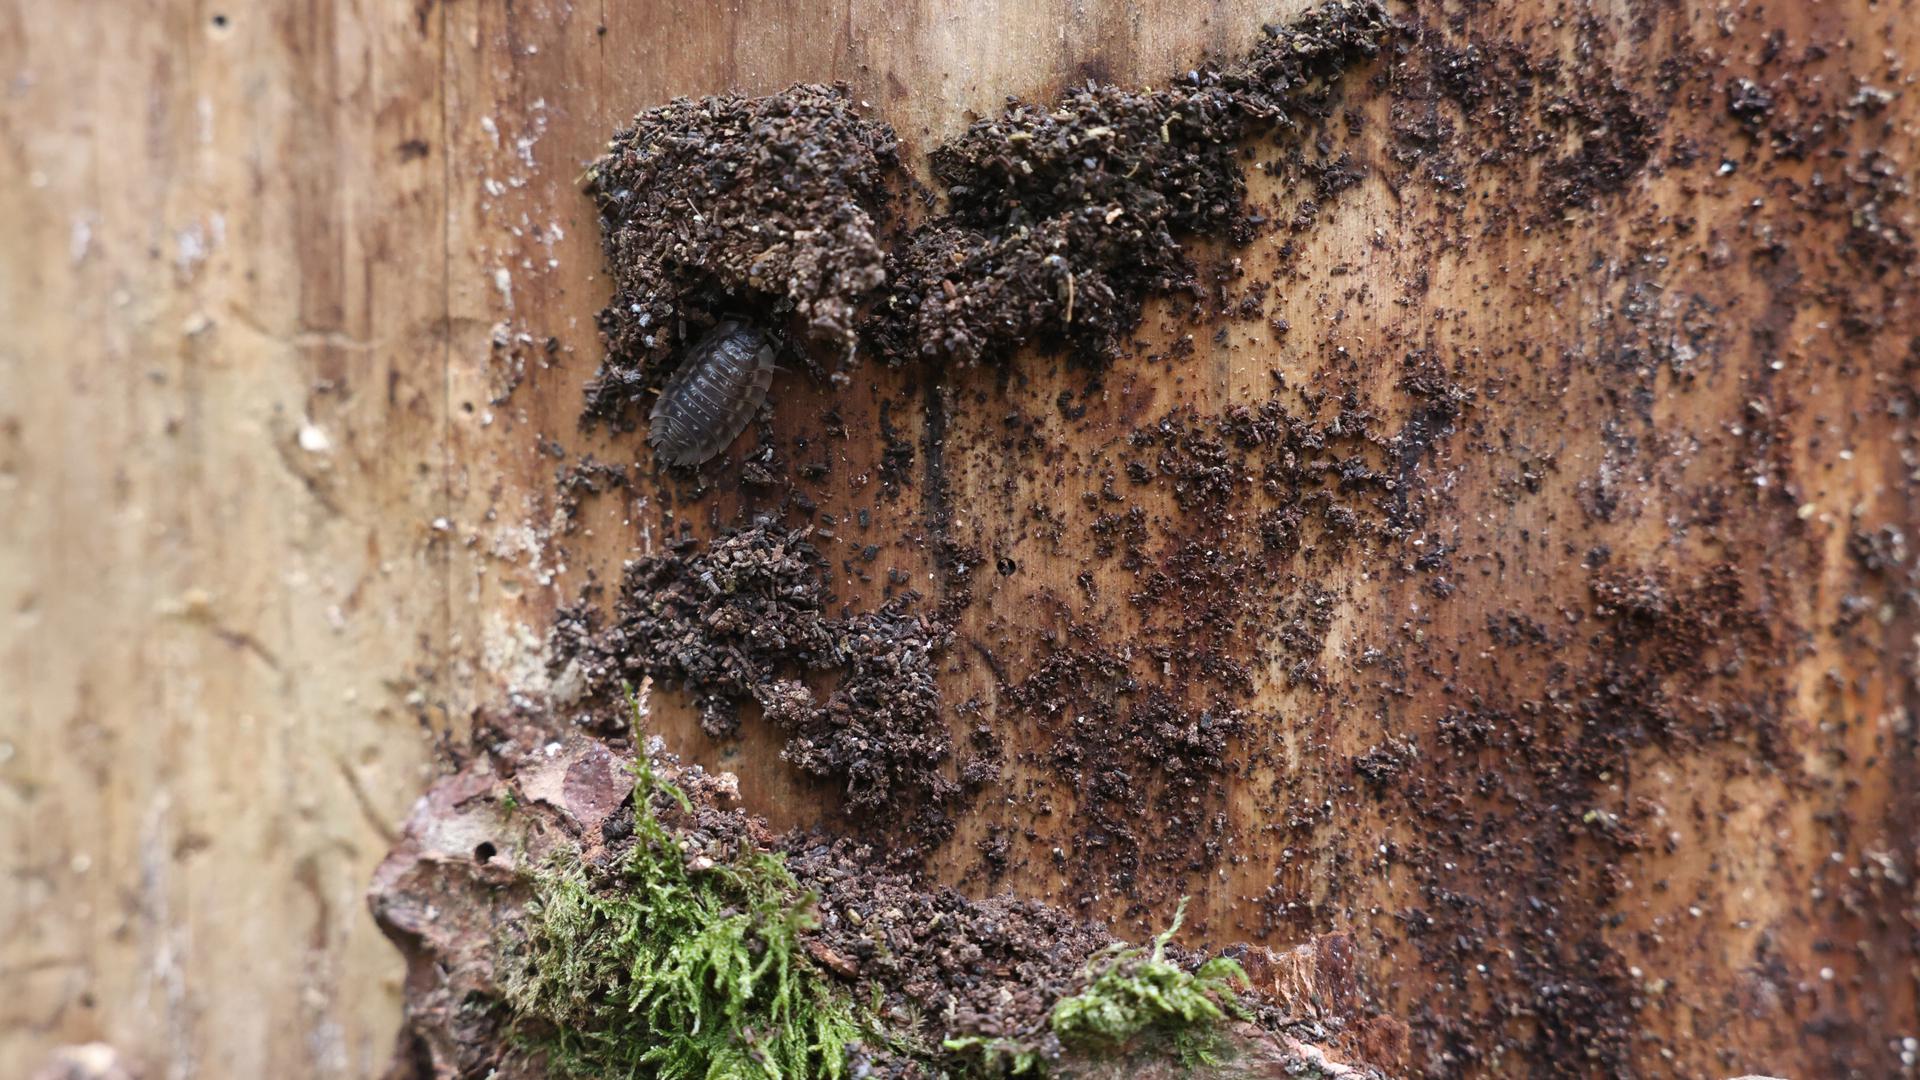 Debaixo da casca dos troncos, os escaravelhos negros alimentam-se das partes vivas das árvores.